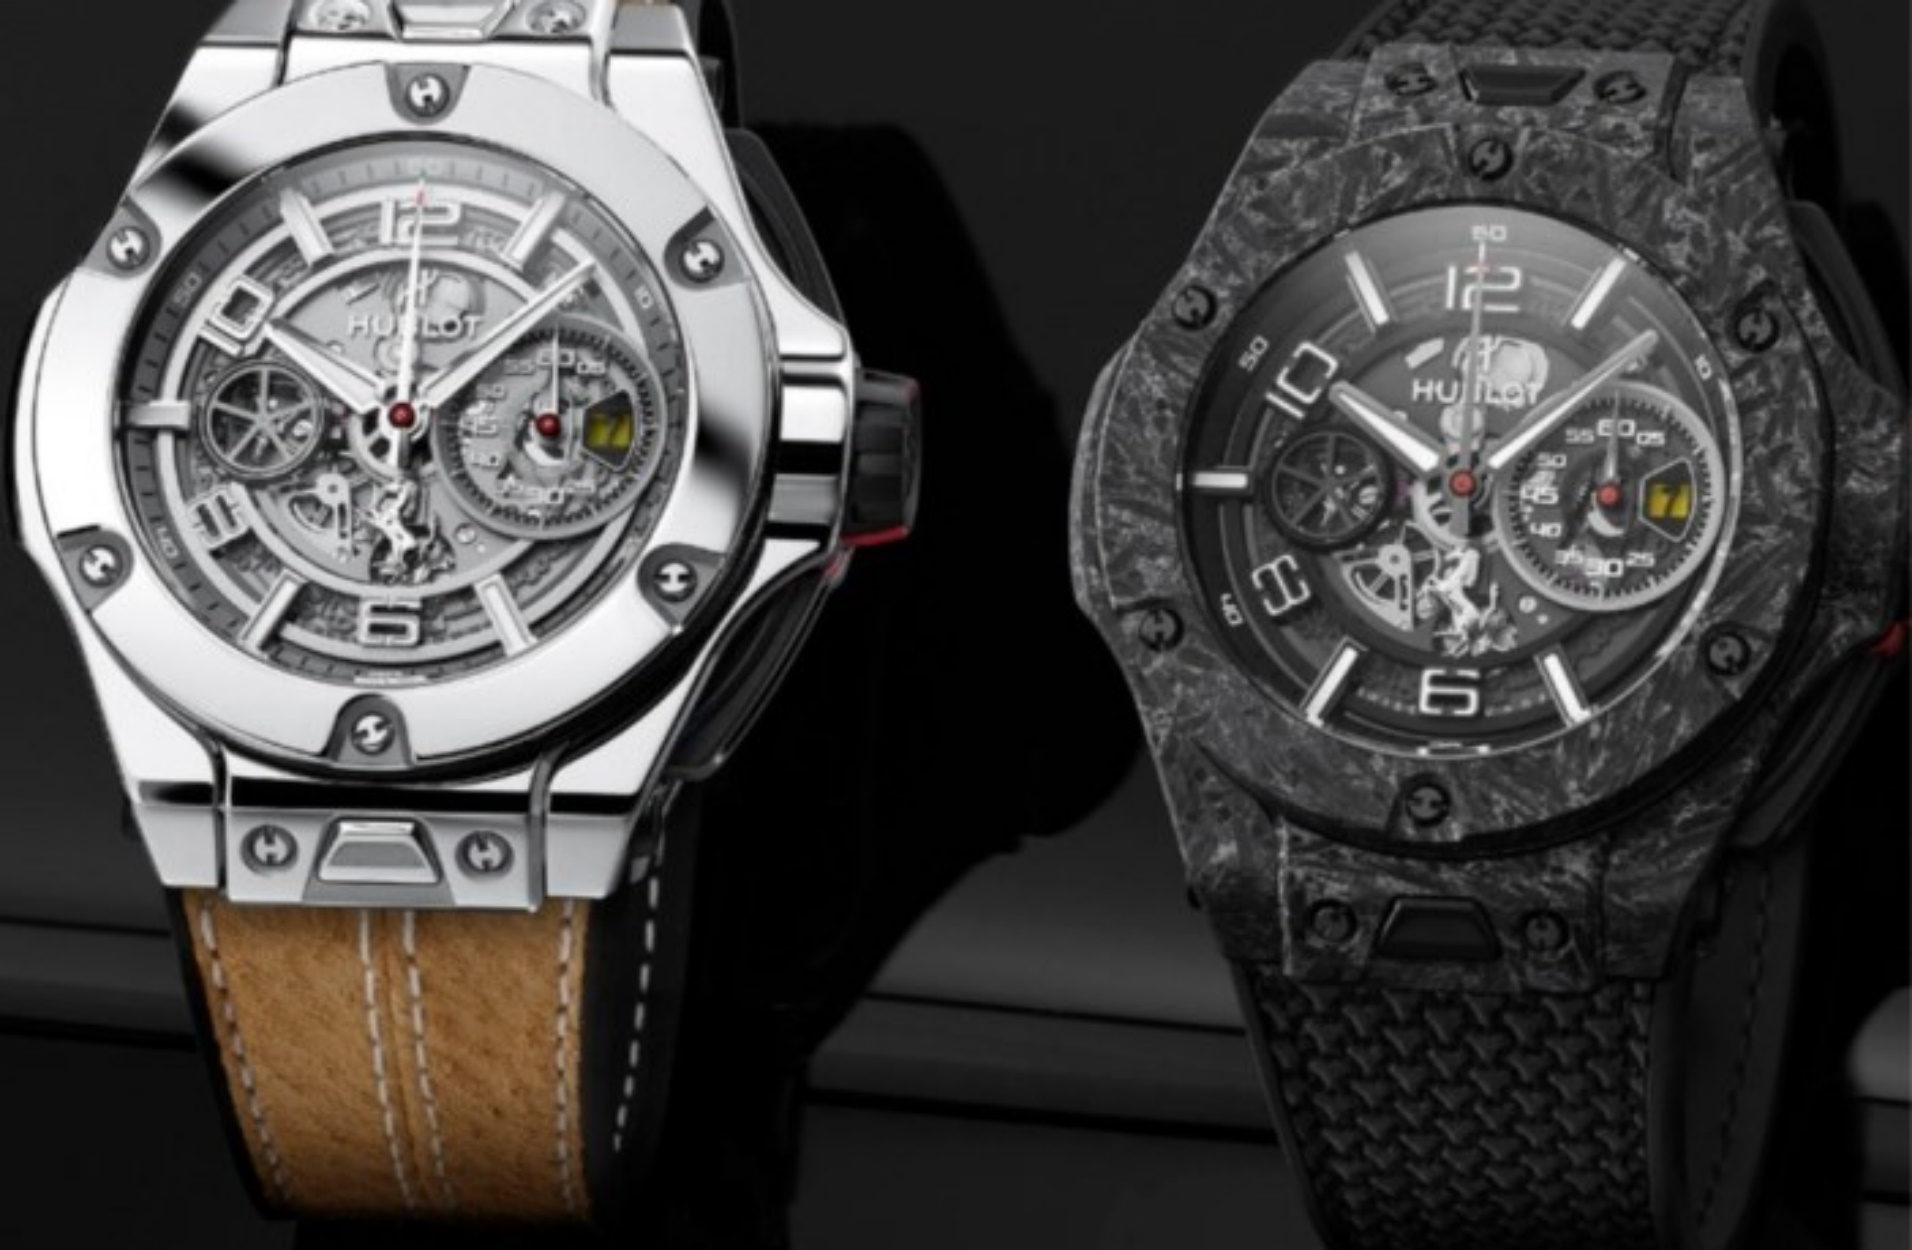 Δύο απίστευτα ρολόγια περιορισμένης έκδοσης από τη Hublot προς τιμήν της Scuderia Ferrari